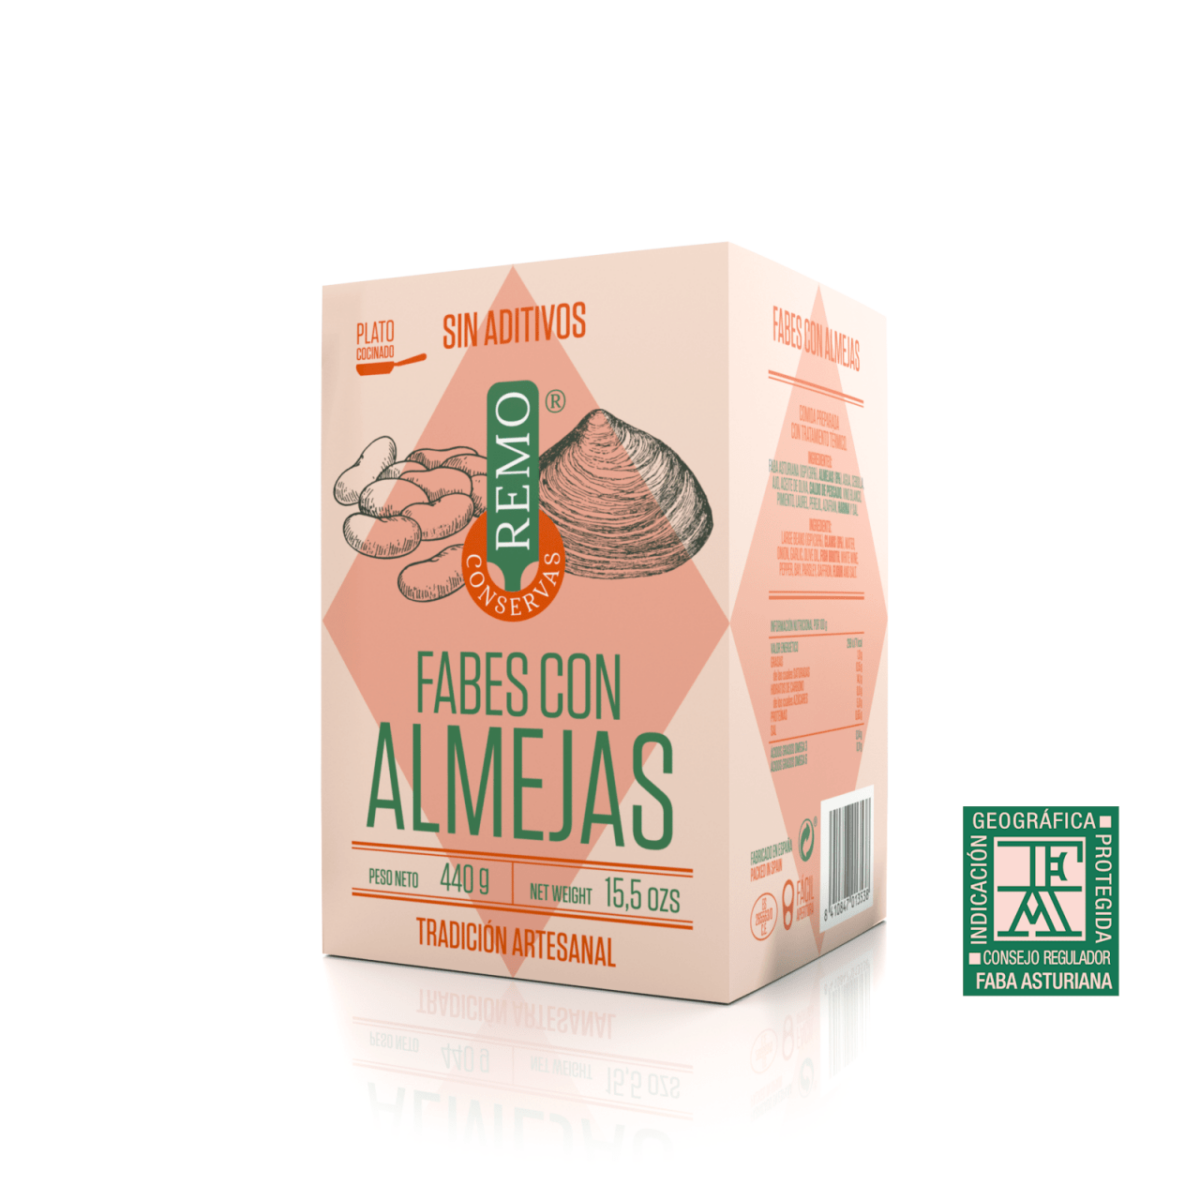 Fabes con Almejas de Conservas Remo, platos cocinados asturianos, Gorfolí tienda online de productos gourmet de Asturias